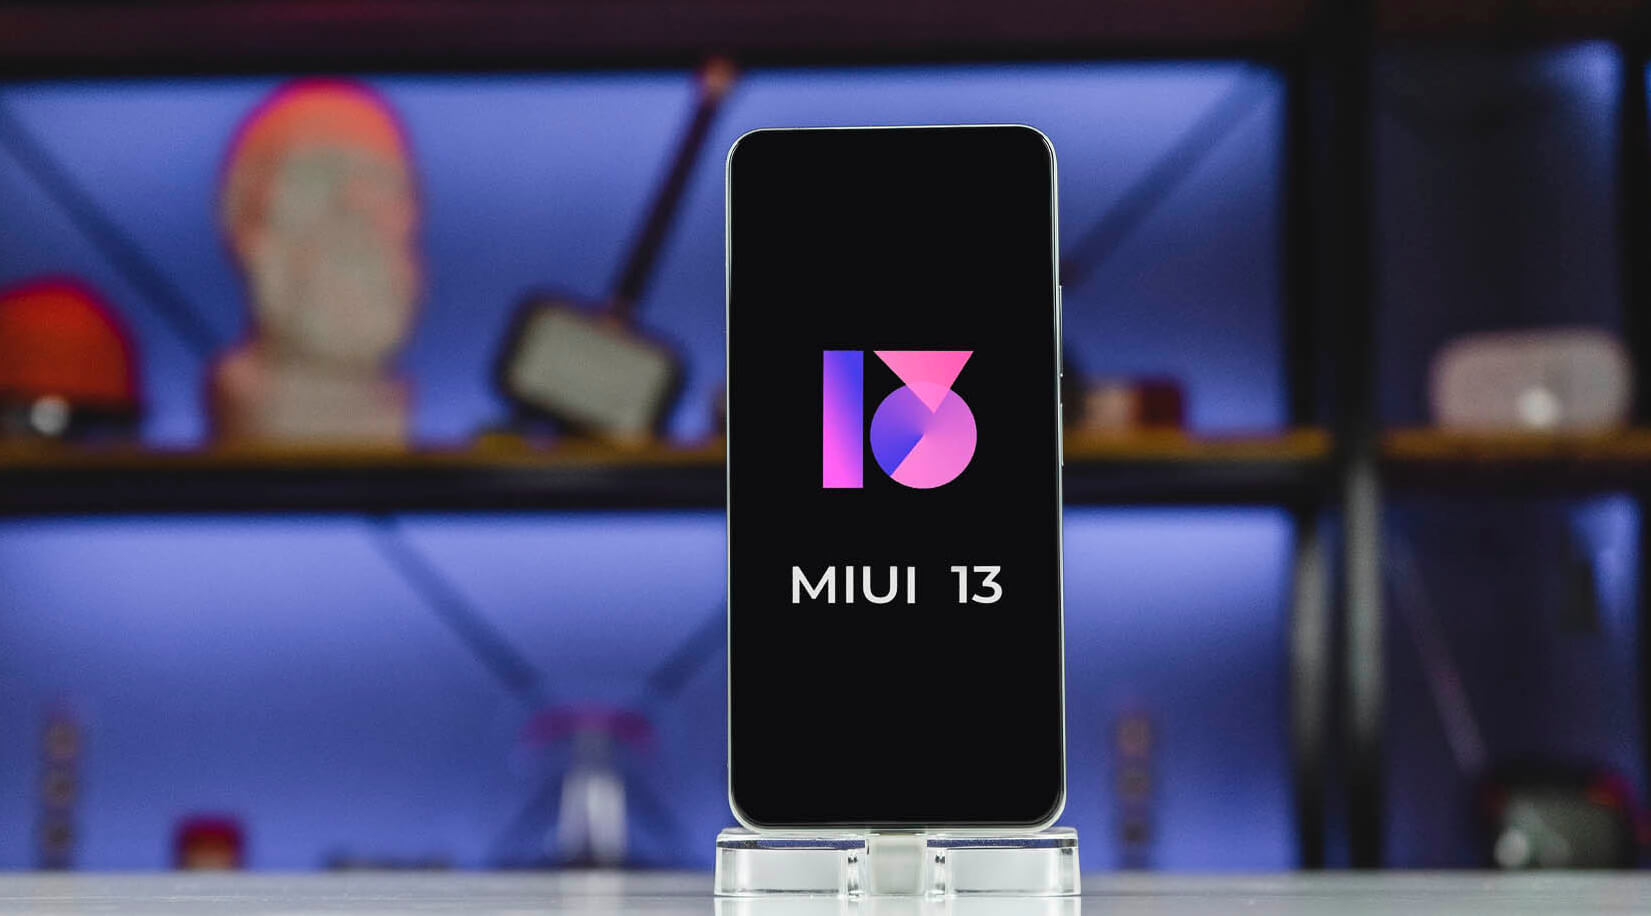 Dwa kolejne smartfony Xiaomi otrzymają stabilną powłokę MIUI 13 już 28 grudnia